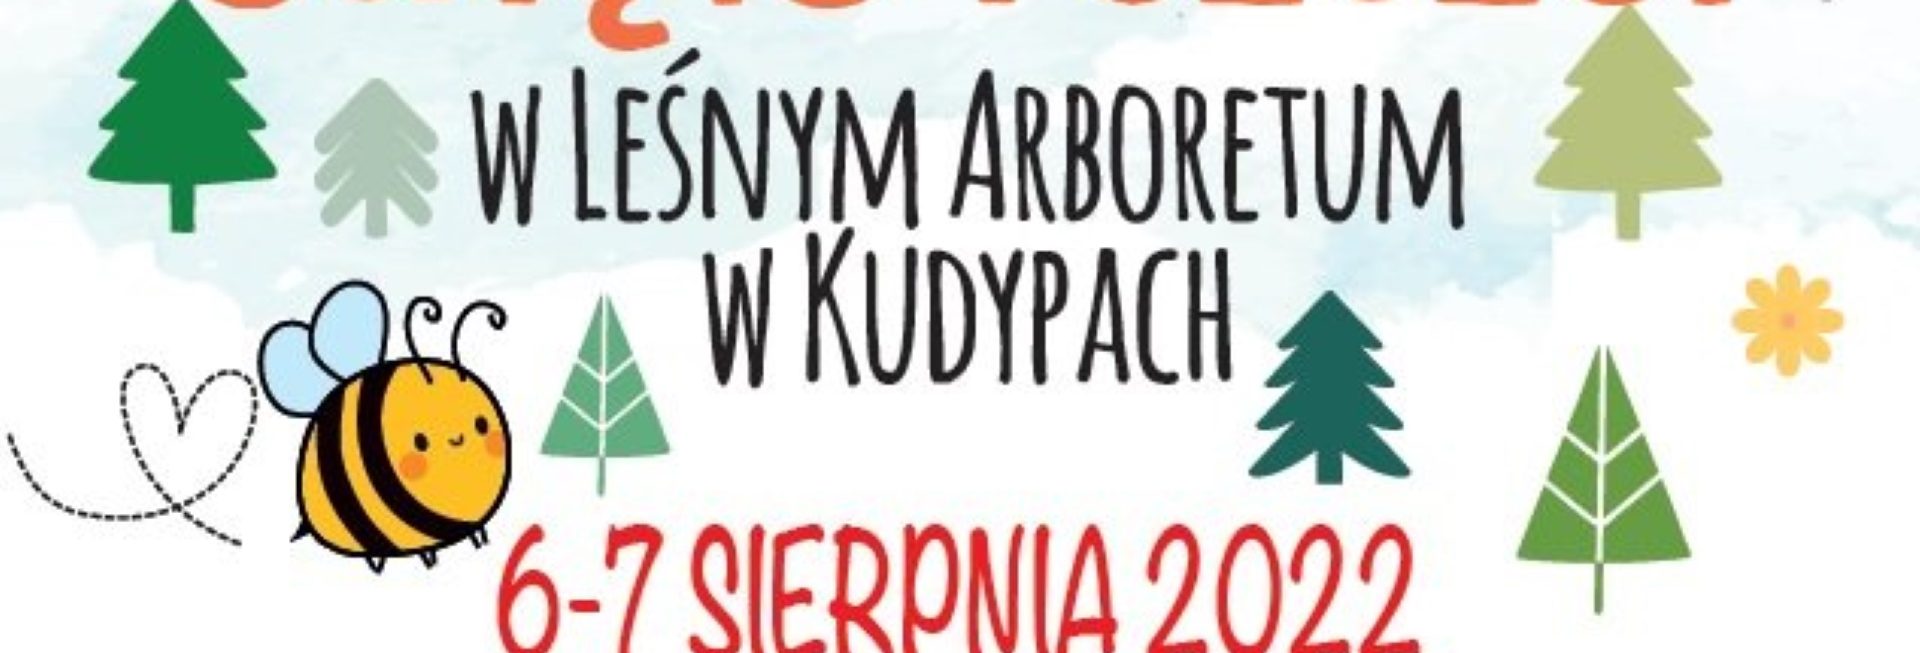 Plakat zapraszający do Nadleśnictwa Kudypy pod Olsztynem na Święto Pszczół w Leśnym Arboretum w Kudypach 2022.